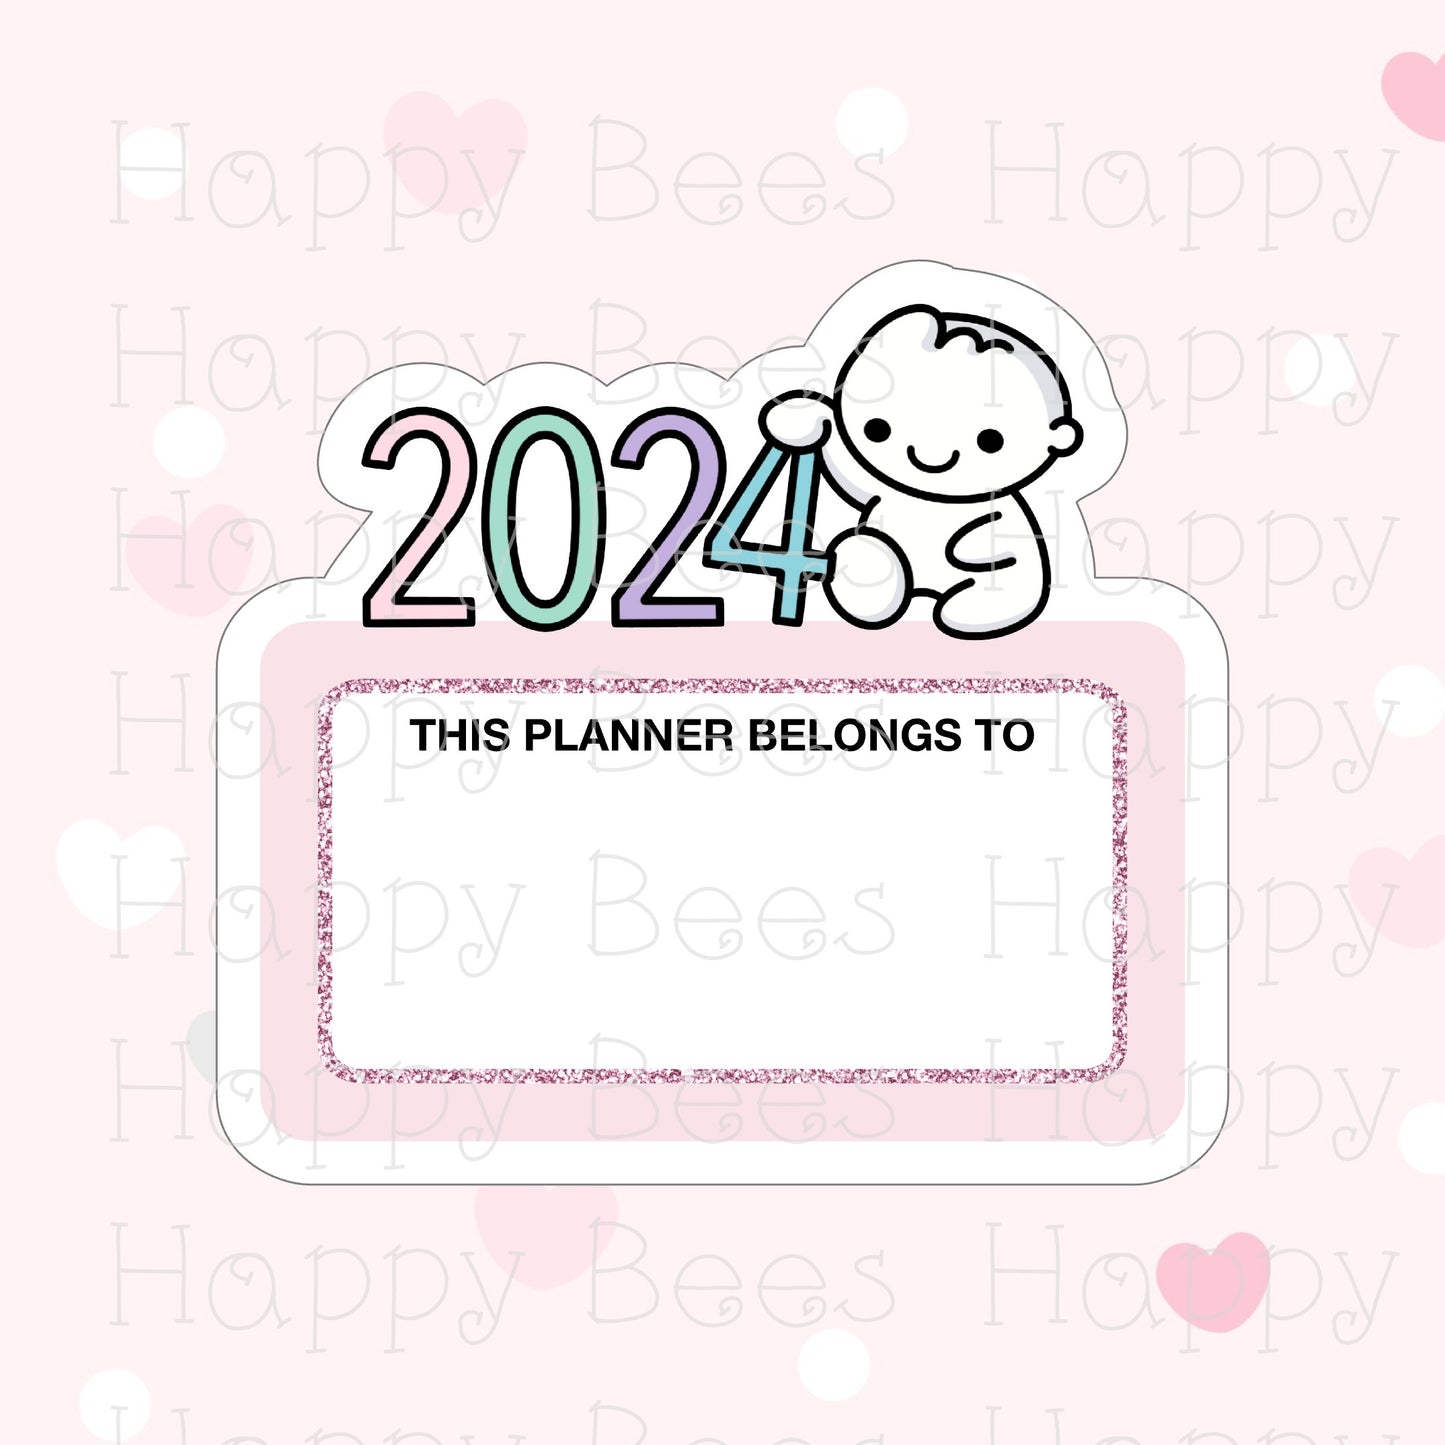 2024 Blank Planner Name Label Die Cut - Cute Doodles Bullet Journal Planner Stickers DC10031